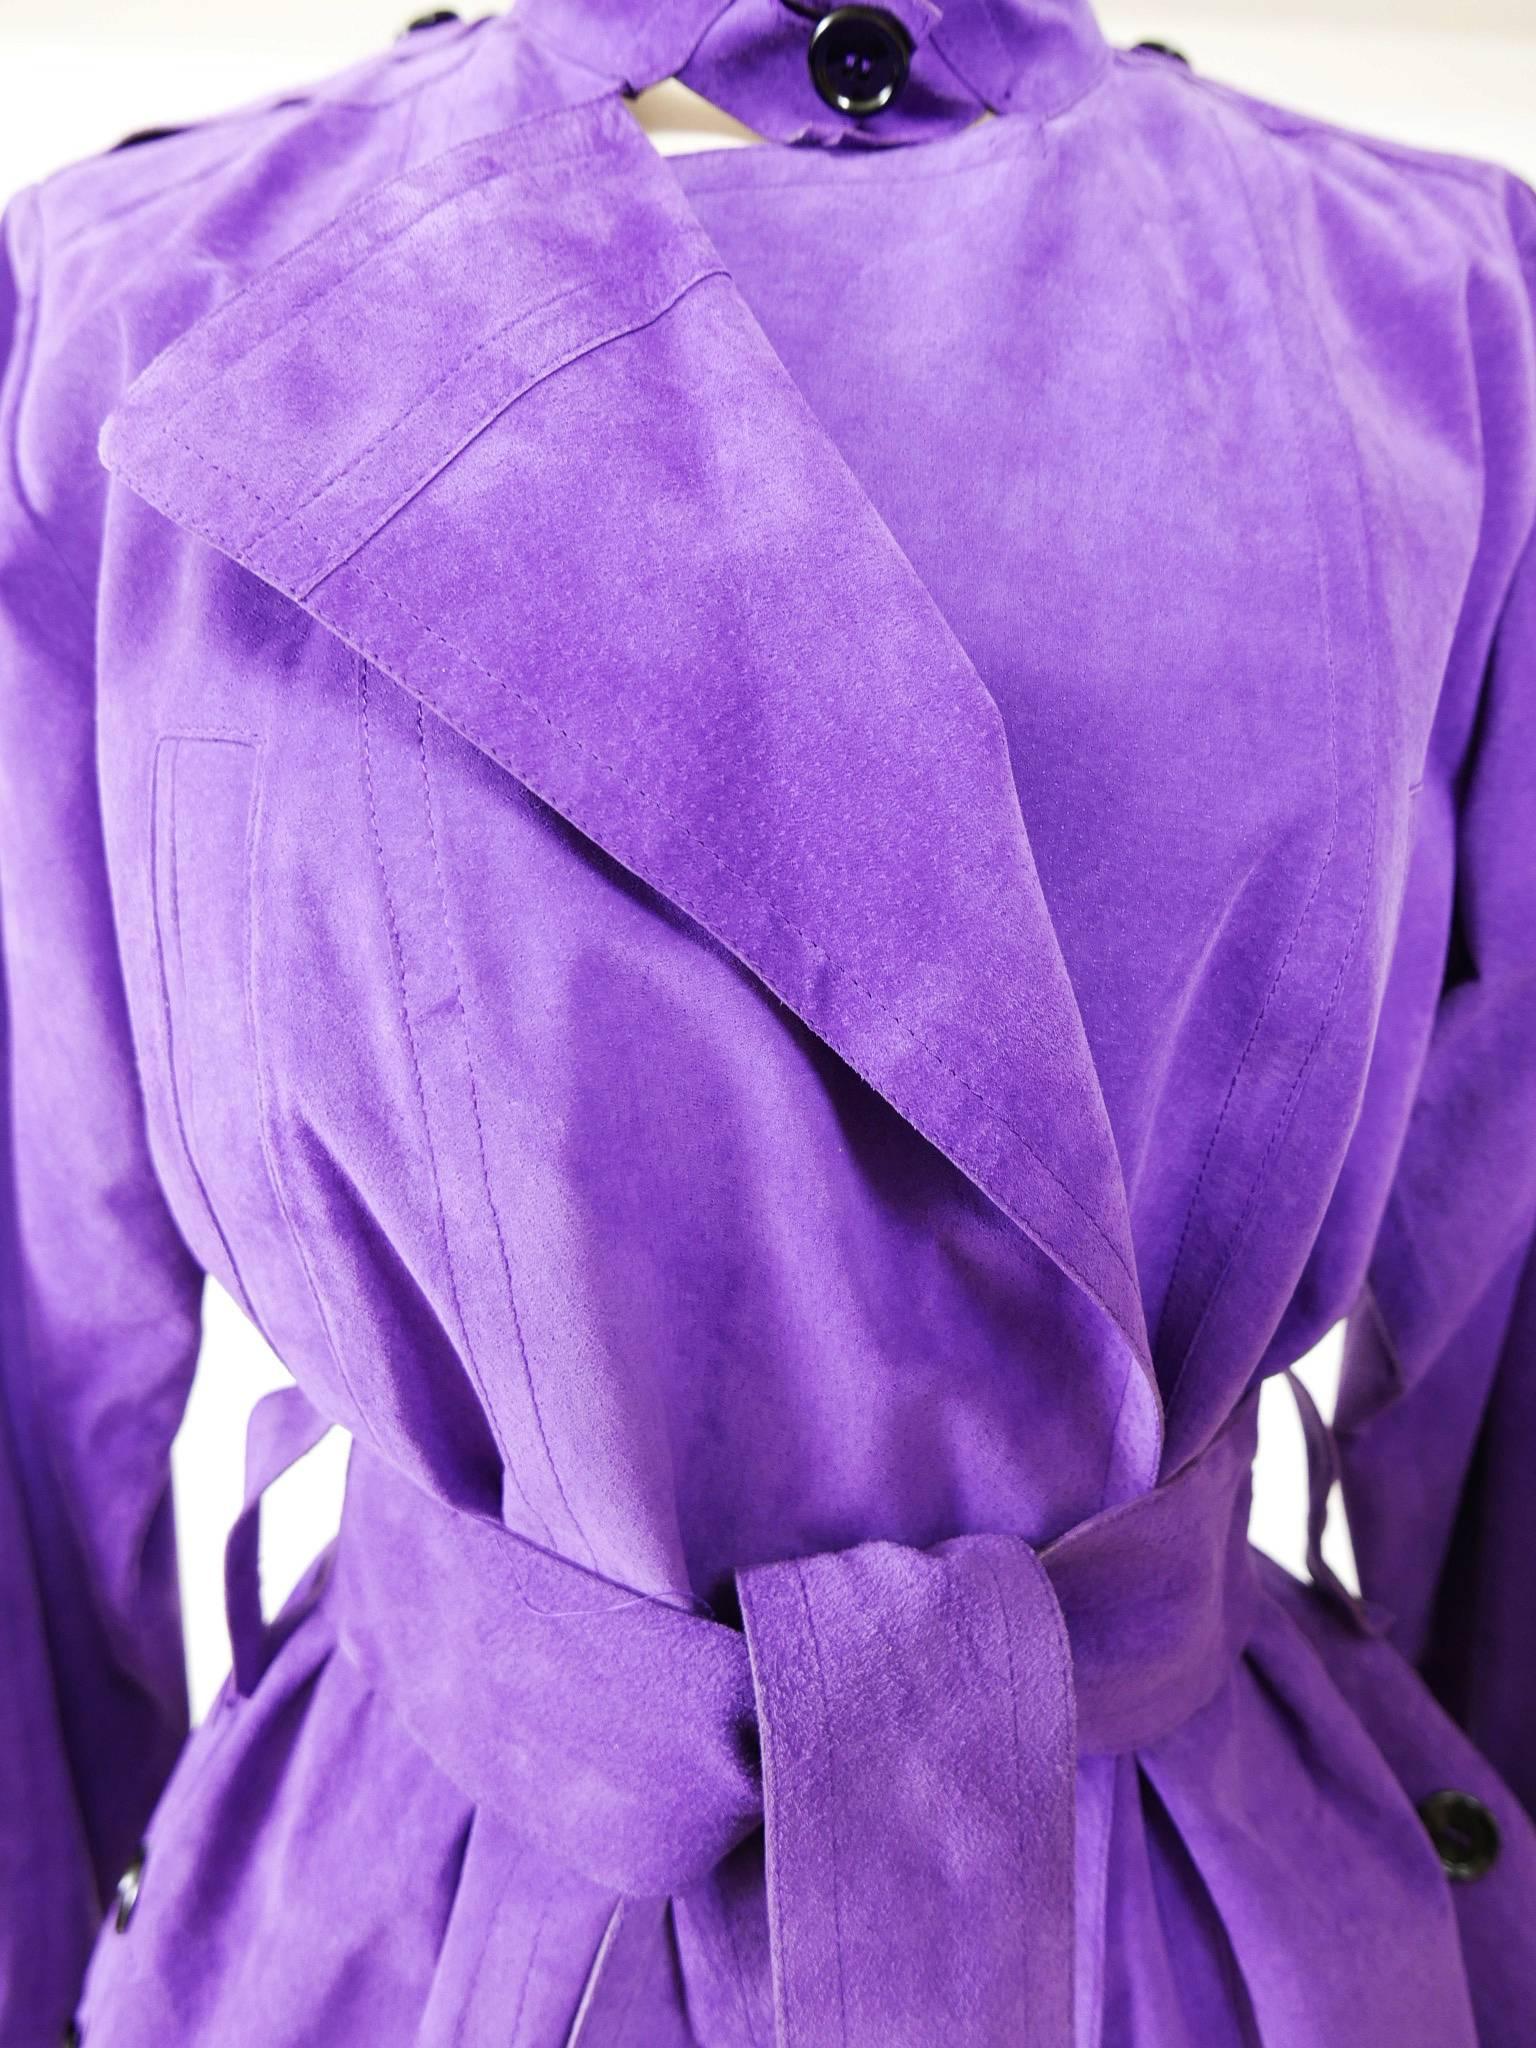 YVES SAINT LAURENT Rive Gauche Purple Suede Leather Jacket 1